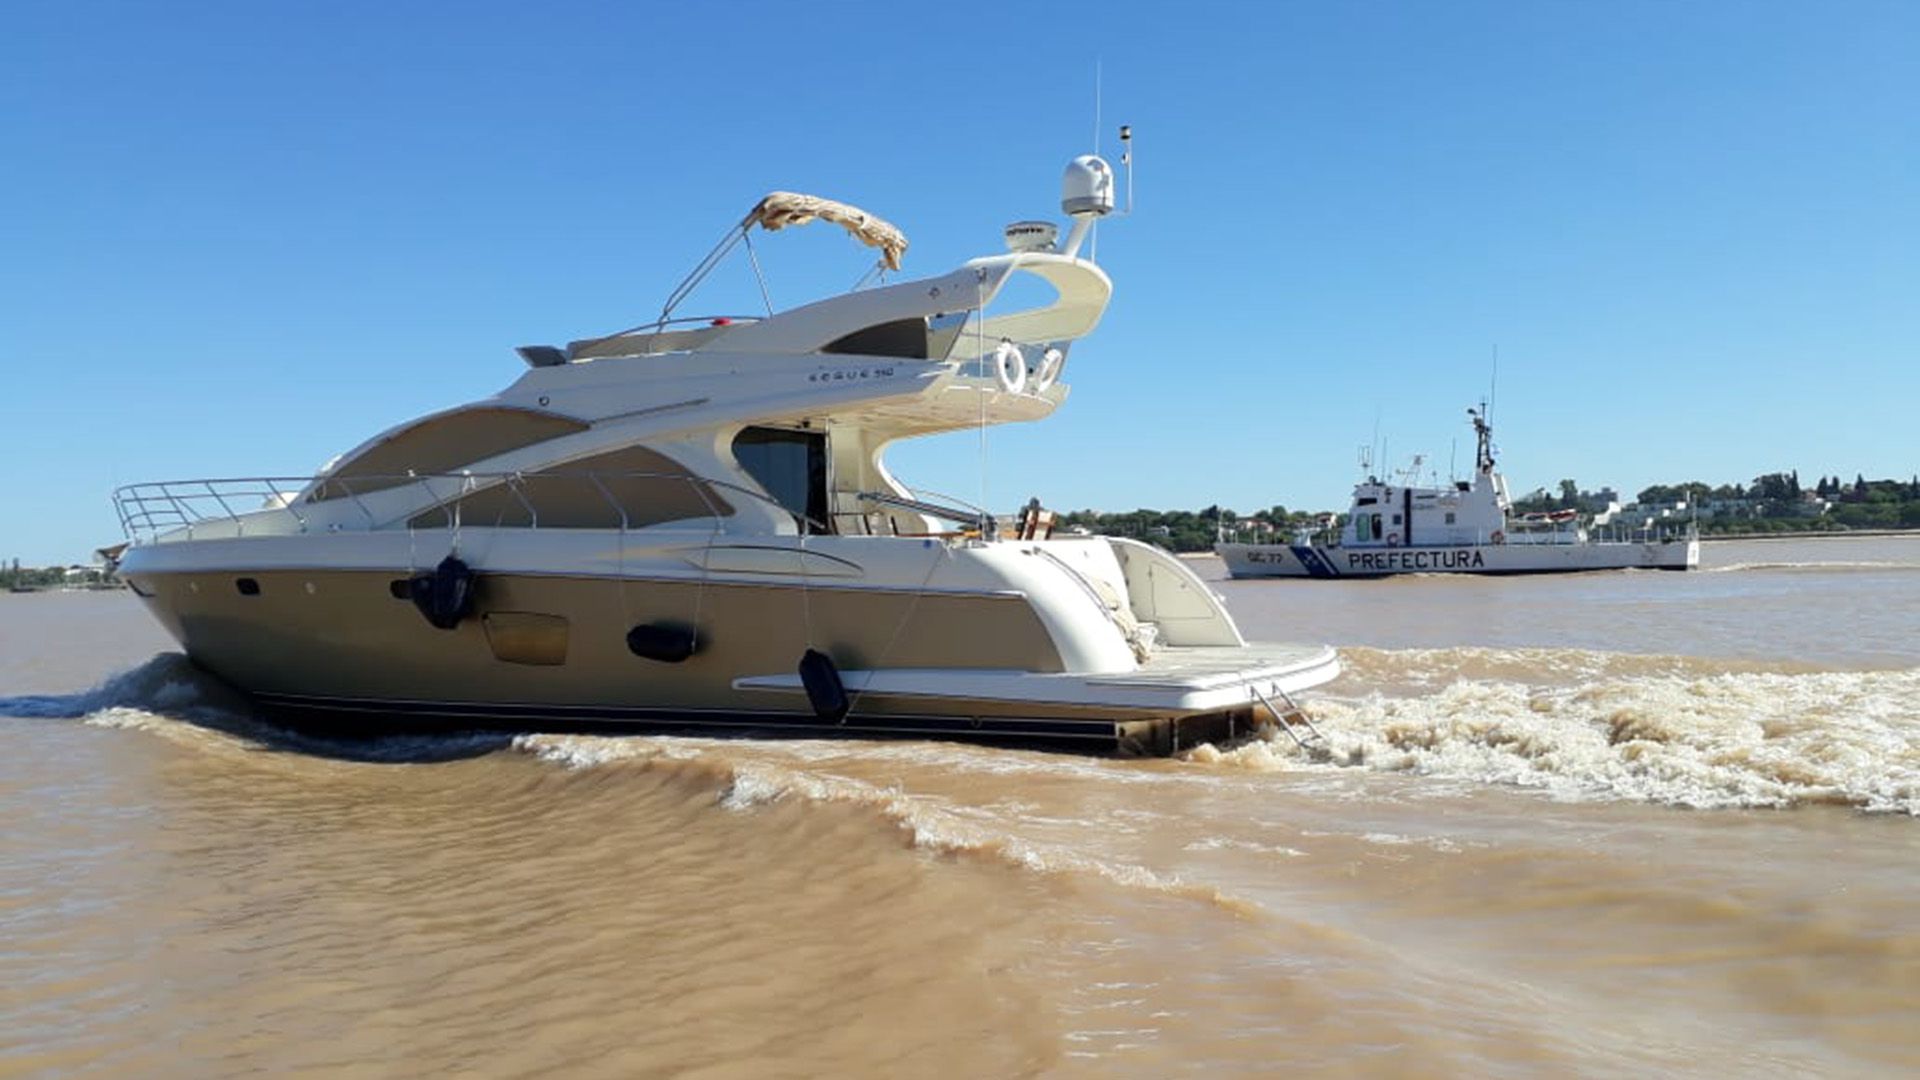  Uno de los dueños de la cerealera Vicentin violó la cuarentena y se fue a navegar en su lujoso yate por el Río Paraná, en Rosario (FOTO: Prefectura)